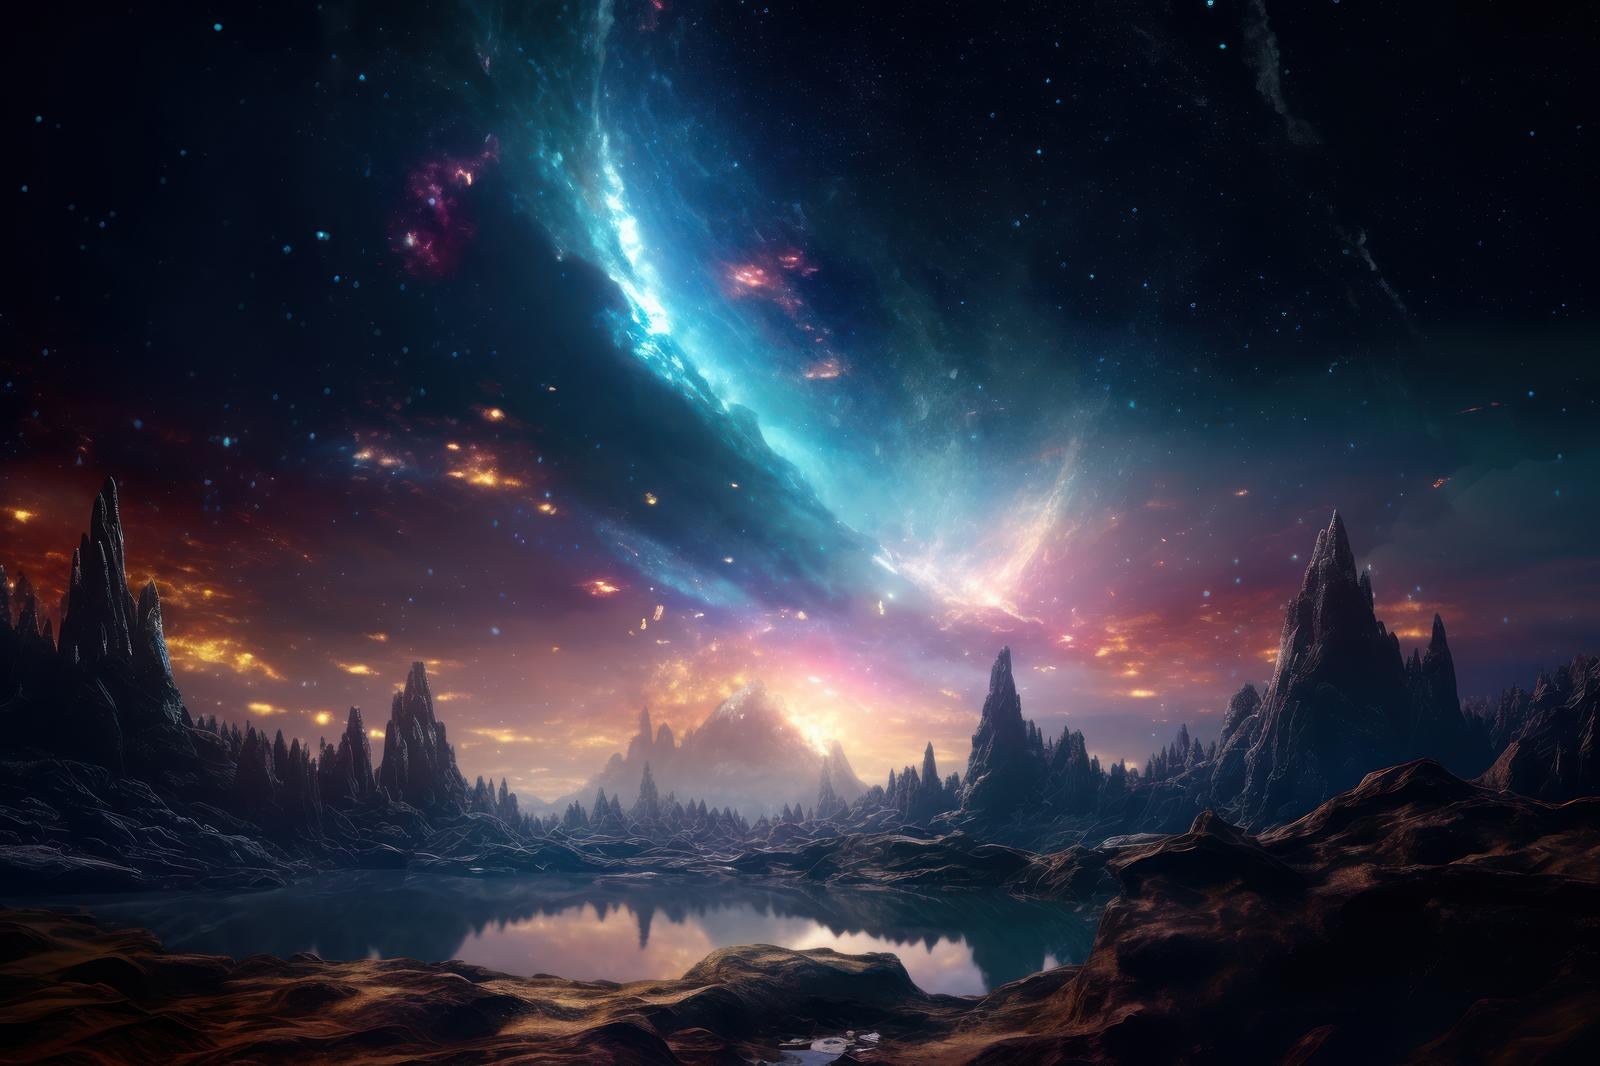 「惑星と銀河の美しい空想イラスト」の写真